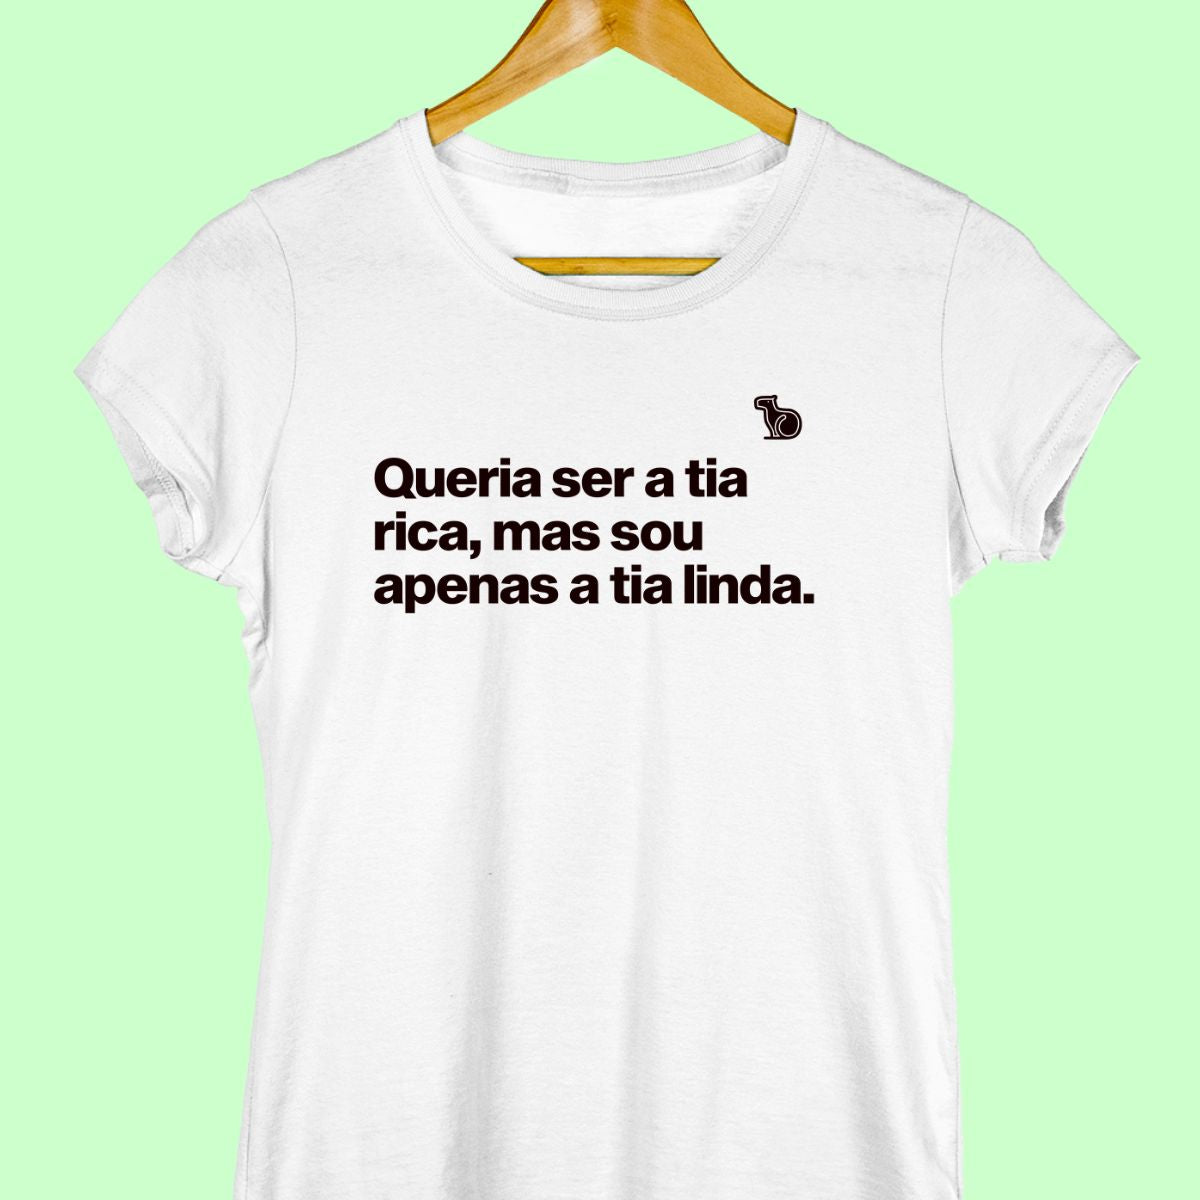 Camiseta com a frase "Queria ser a tia rica, mas sou apenas a tia linda." feminina branca.